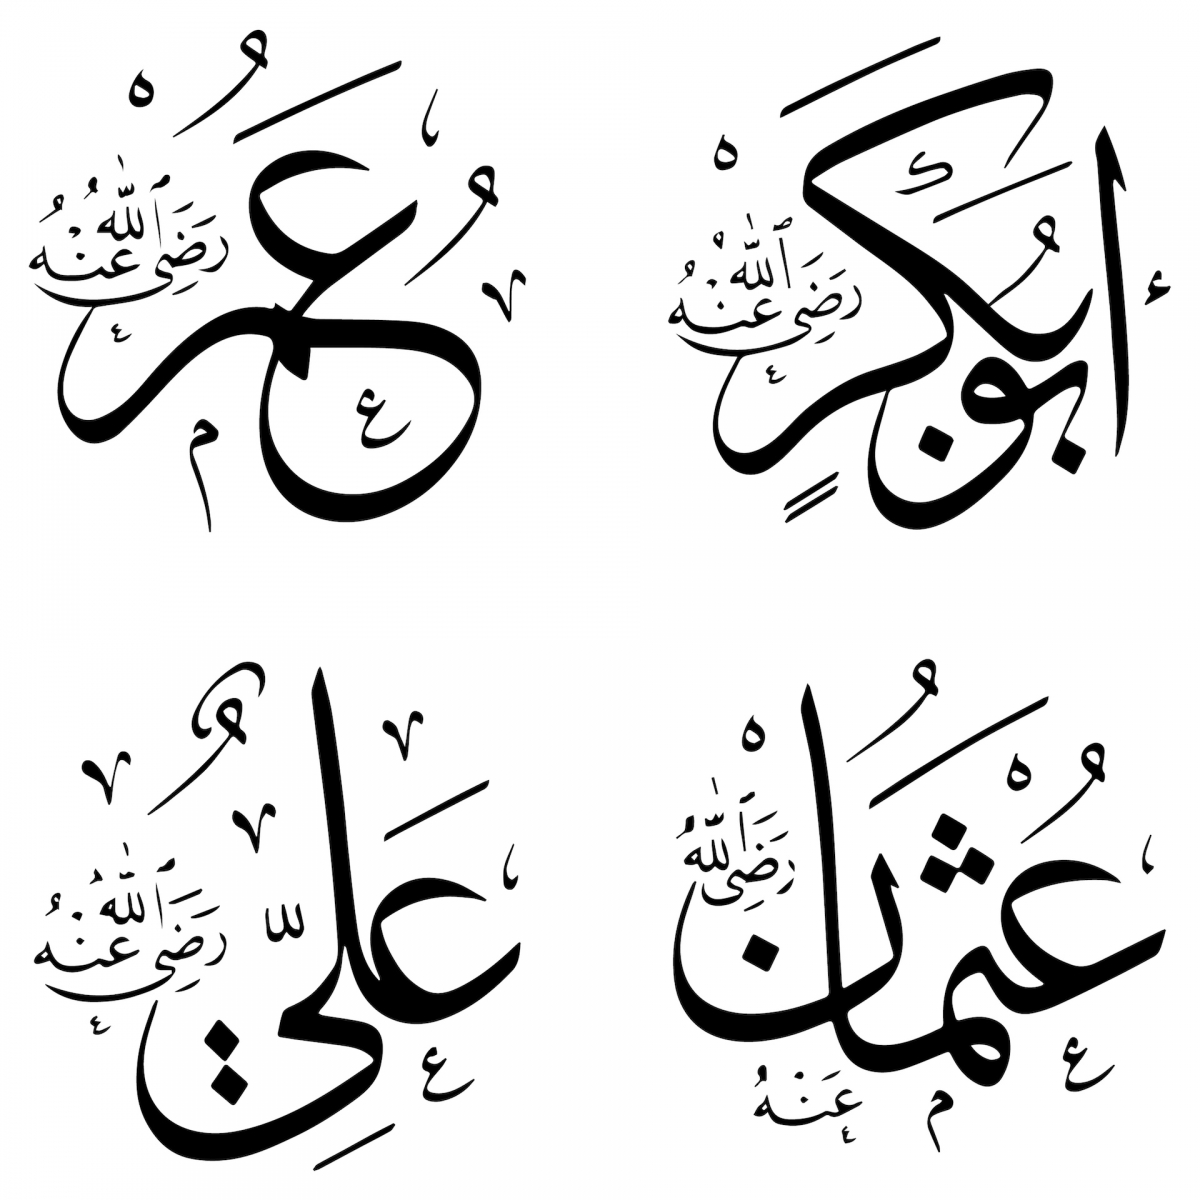 Los nombres de los califas Rashidun en la inscripción islámica.  Ebu Bekir, Omer, Osman y Ali.  Las placas con el nombre de 4 califas rashidun decoran cualquier edificio religioso en el mundo islámico